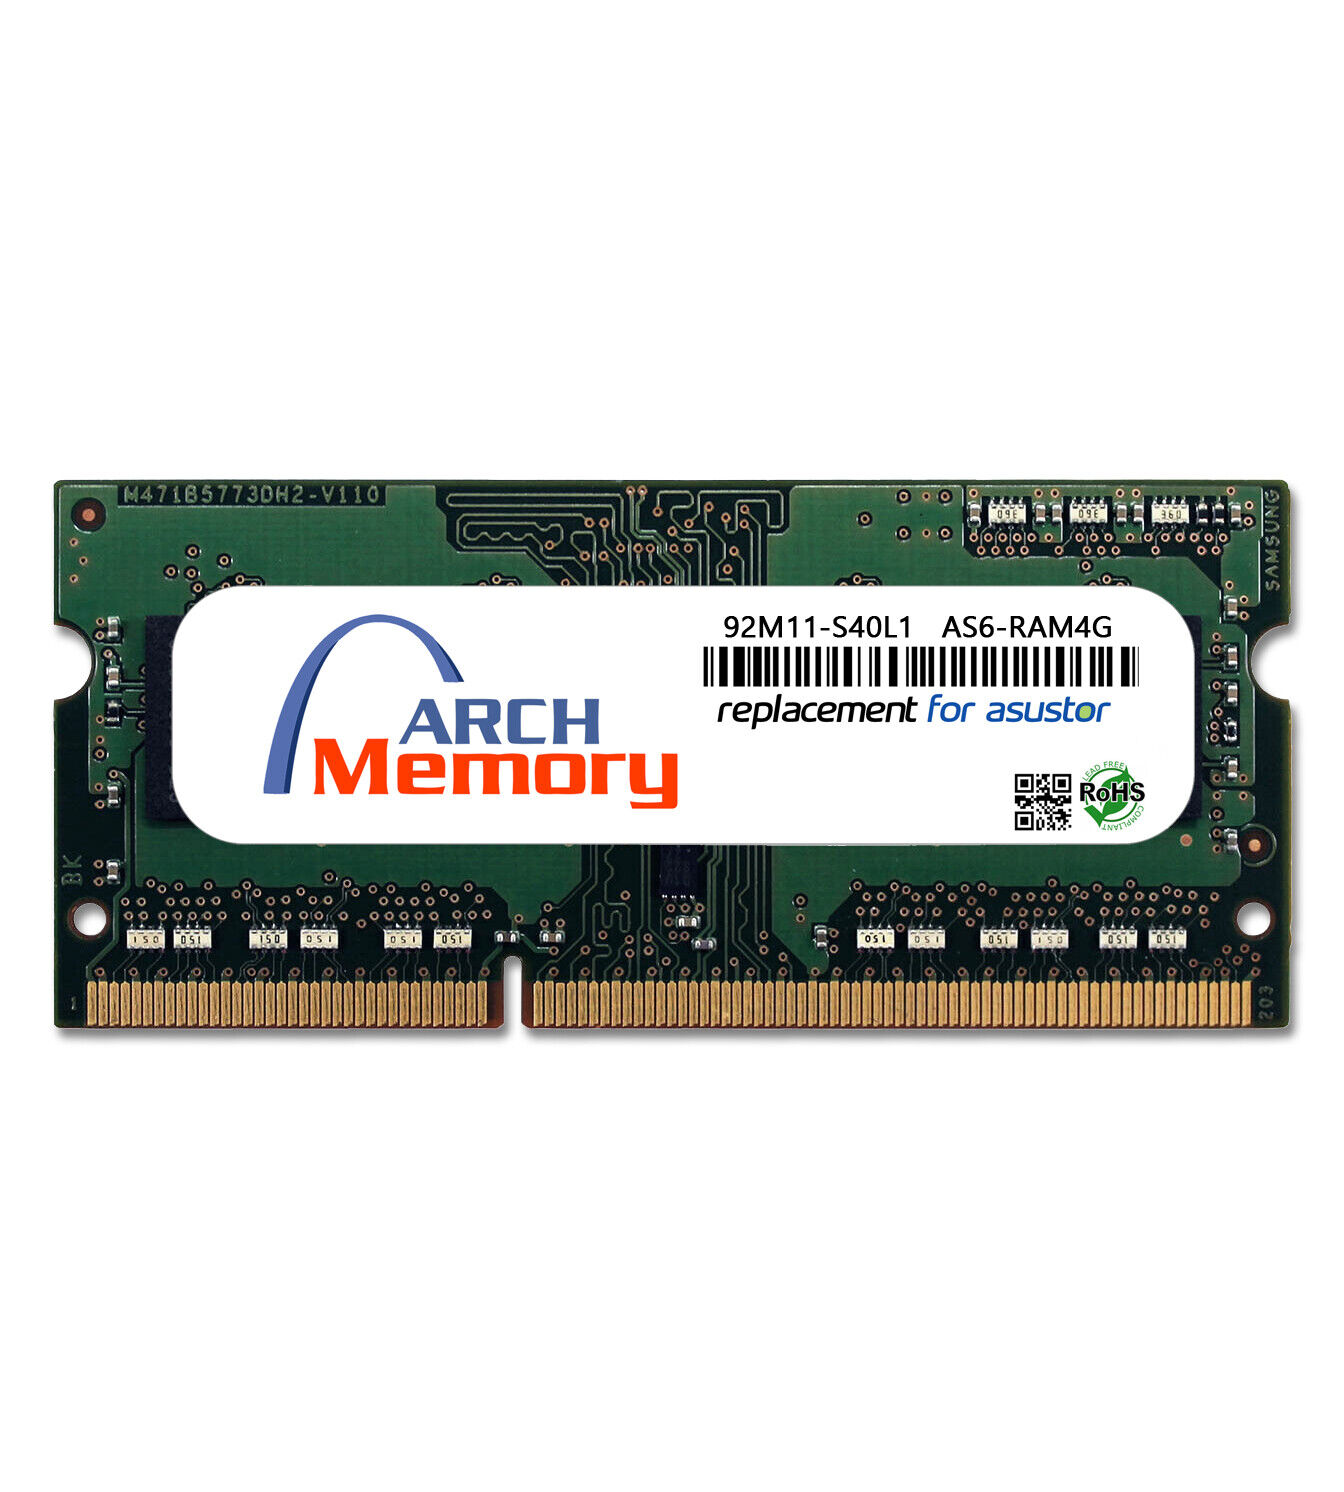 4GB 92M11-S40L1 AS6-RAM4G DDR3L-1866 204-Pin So-dimm RAM Memory for Asustor